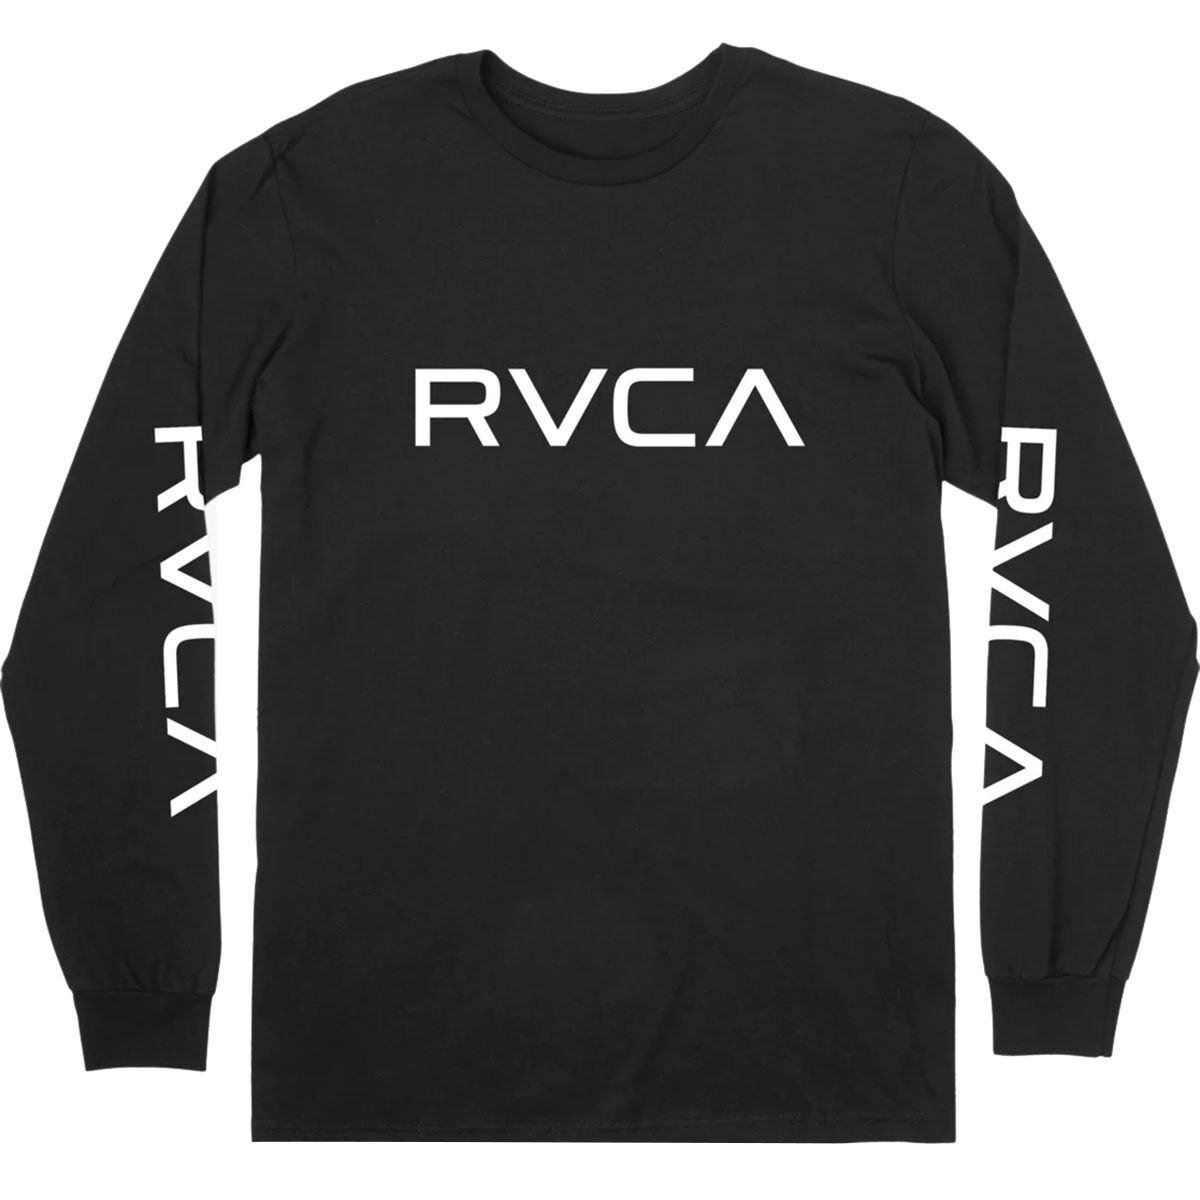 RVCA Big RVCA Long-Sleeve T-Shirt - Men's